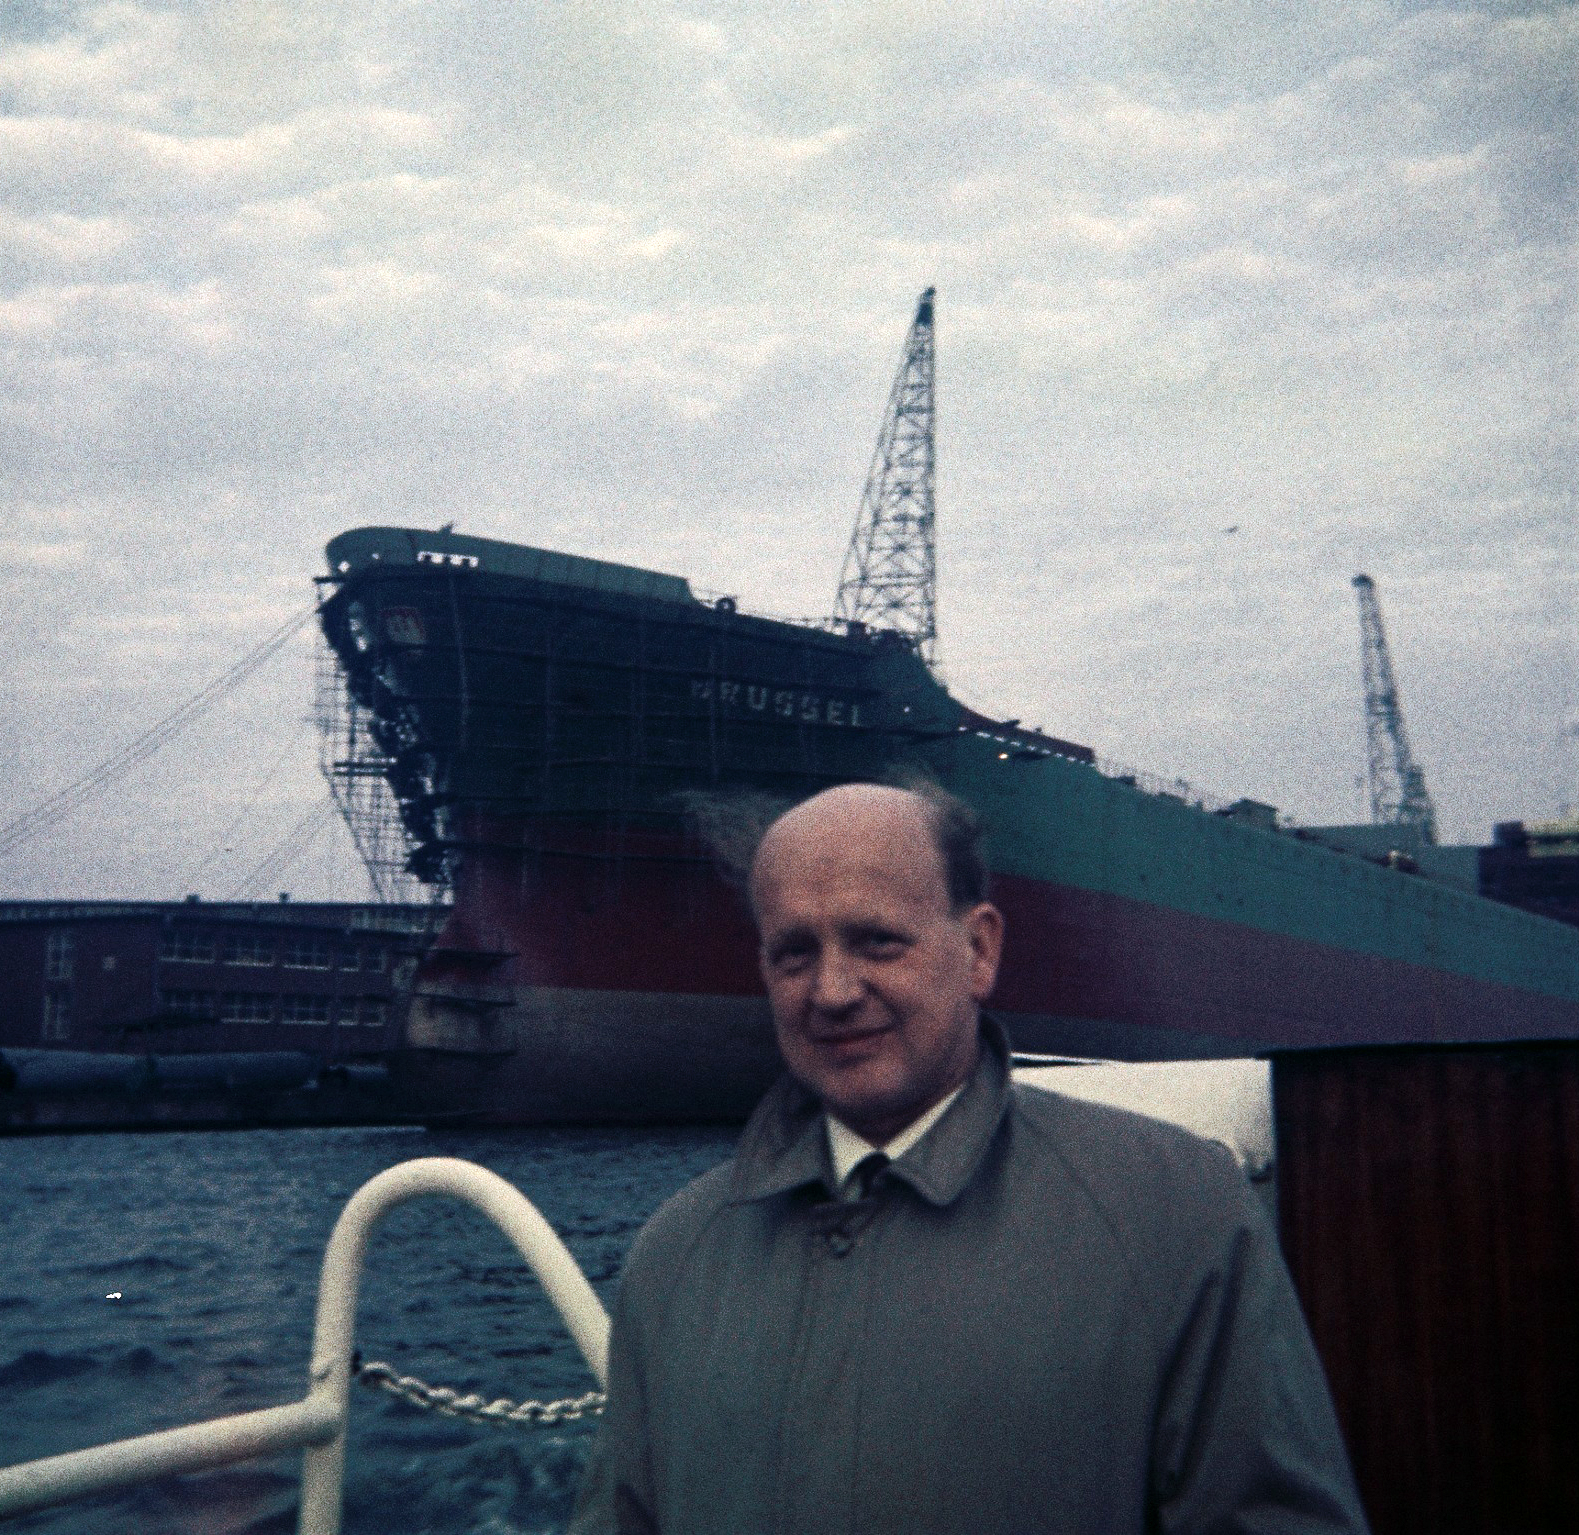 Farbfoto: Rudolf Thomasius senior im Emder Hafen auf einem Hafenrundfahrtsboot vor dem Dampfer BRUSSEL im Jahre 1967. Fotograf: Erwin Thomasius.